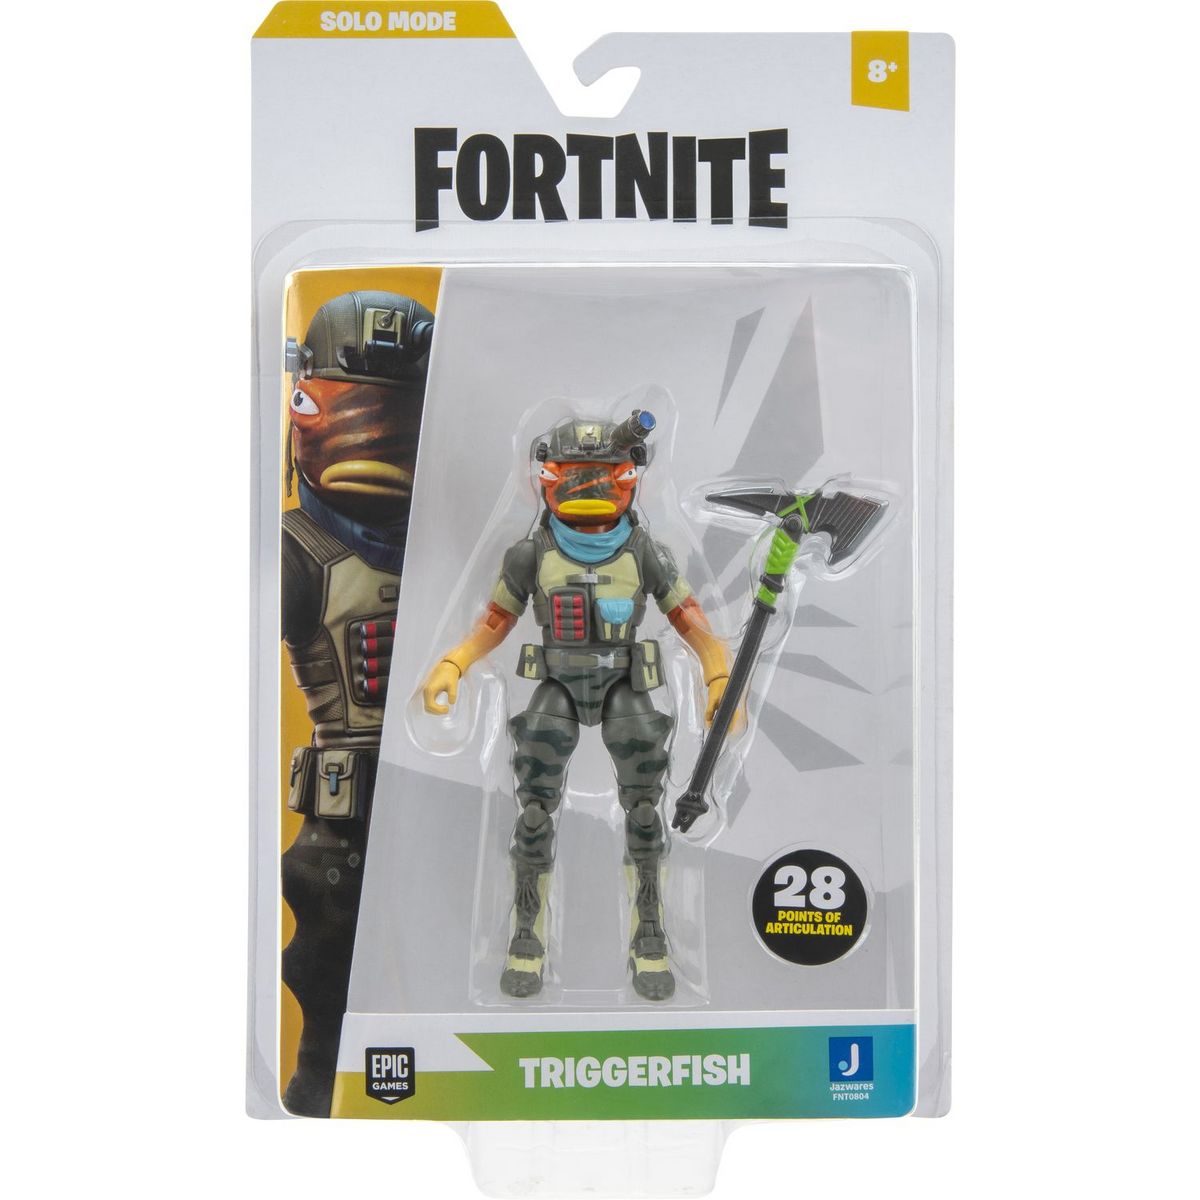 Fortnite - Figurine Triggerfish Solo Mode pas cher 